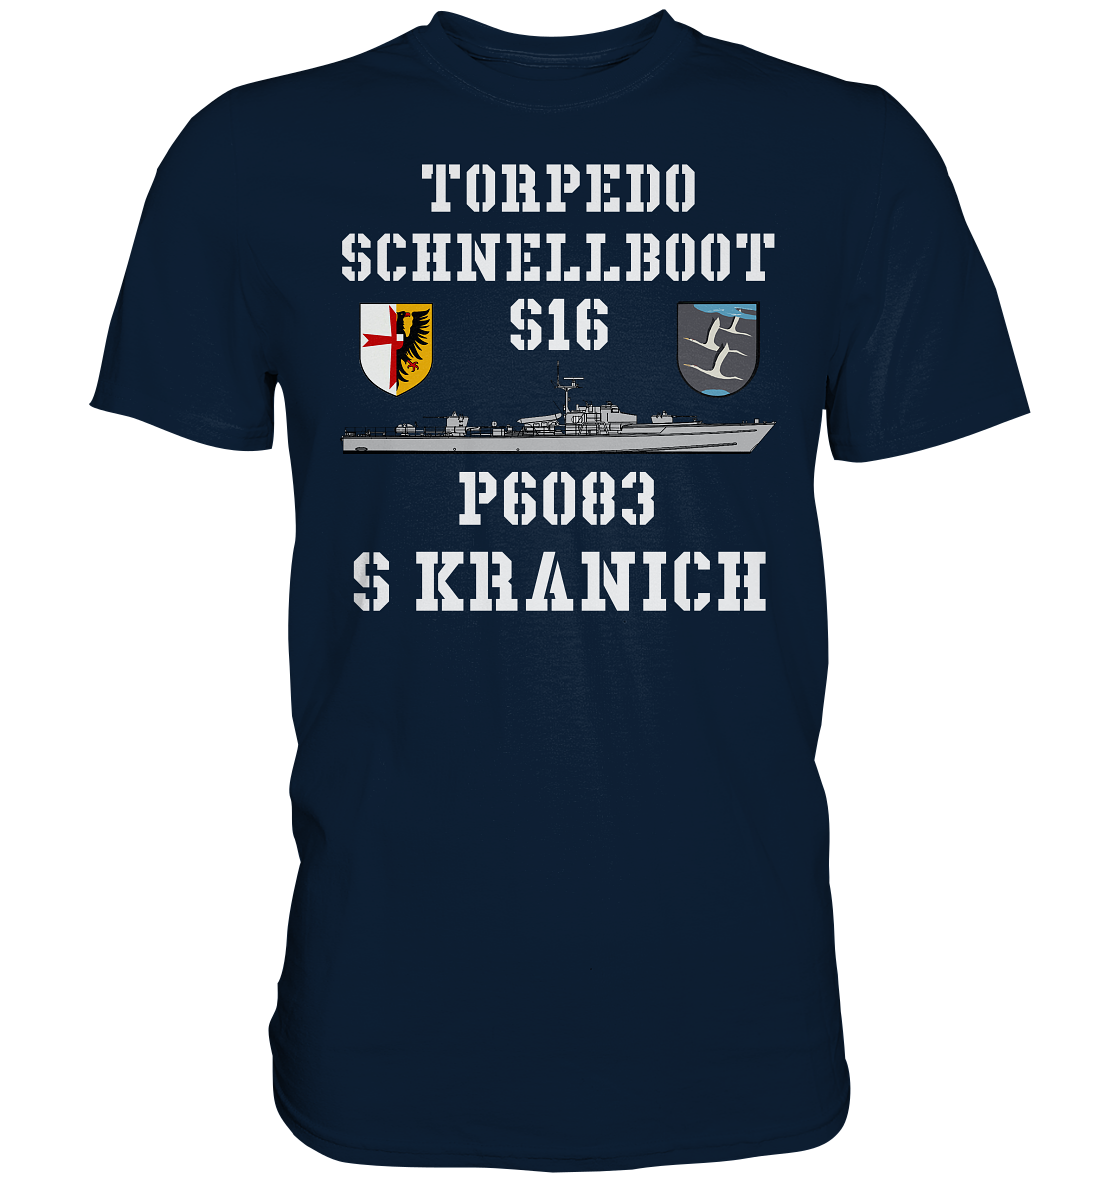 Torpedo-Schnellboot P6083 S16 KRANICH - Premium Shirt